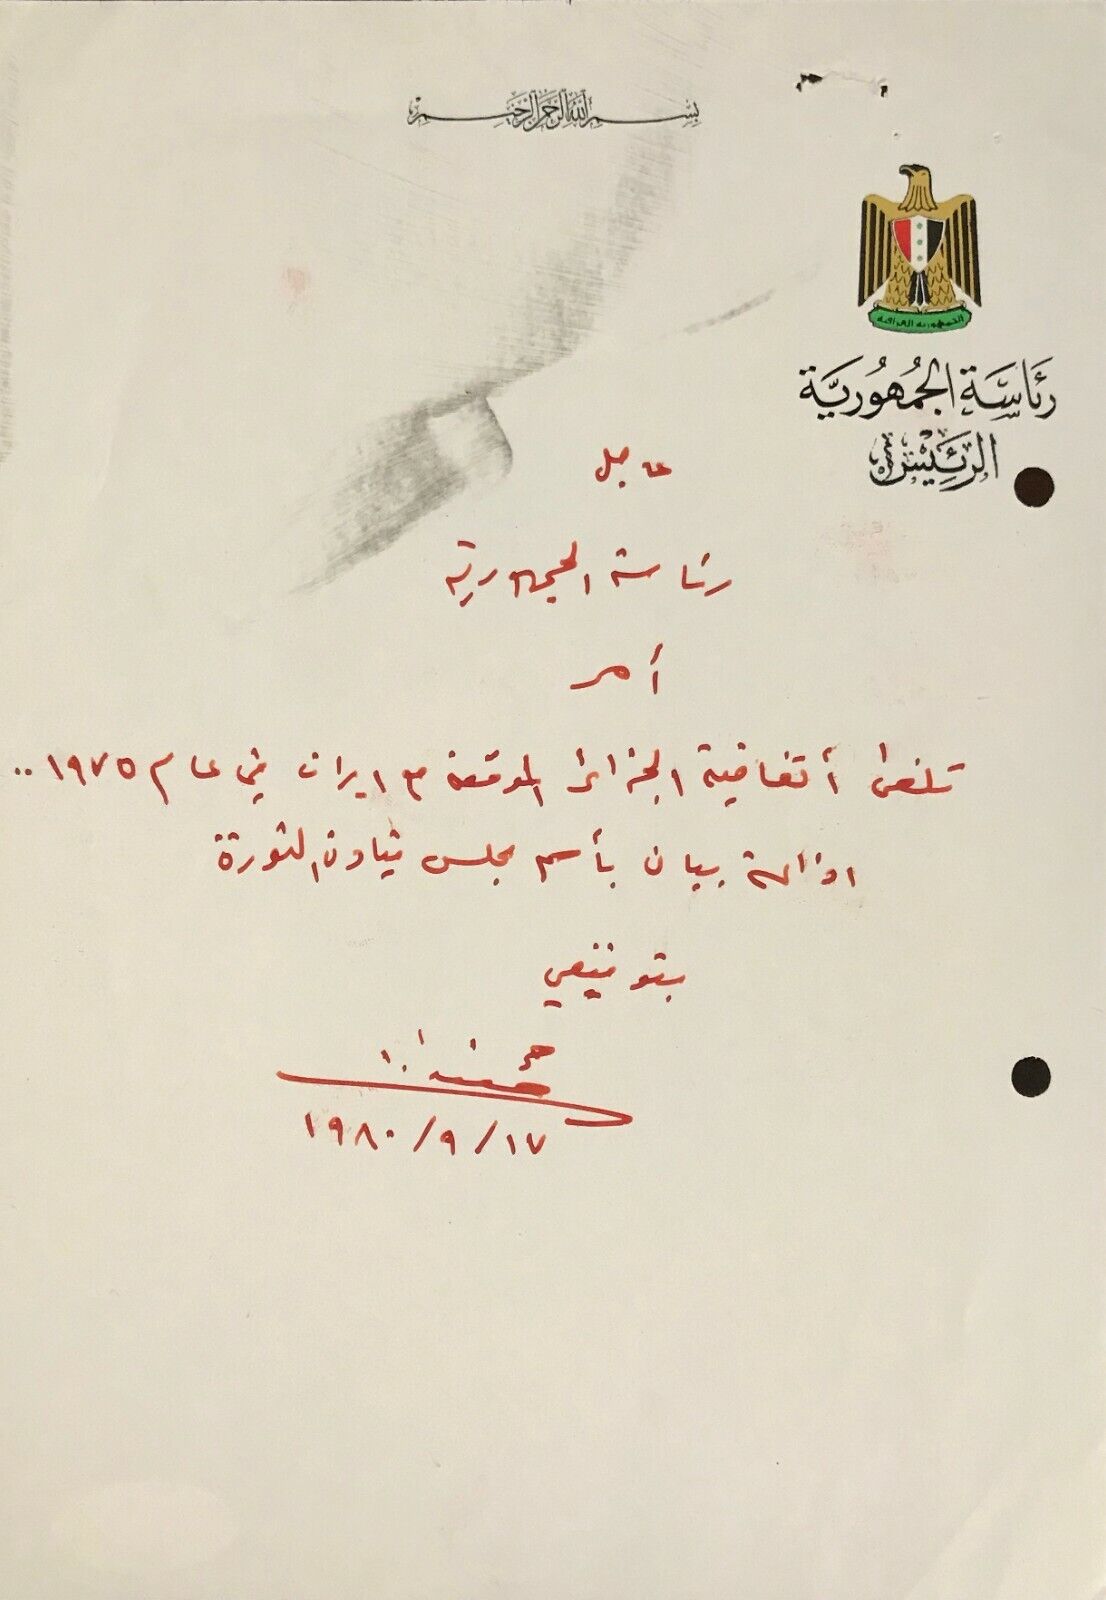 Antique Saddam Hussein's Handwritten Letter - Starting War Order